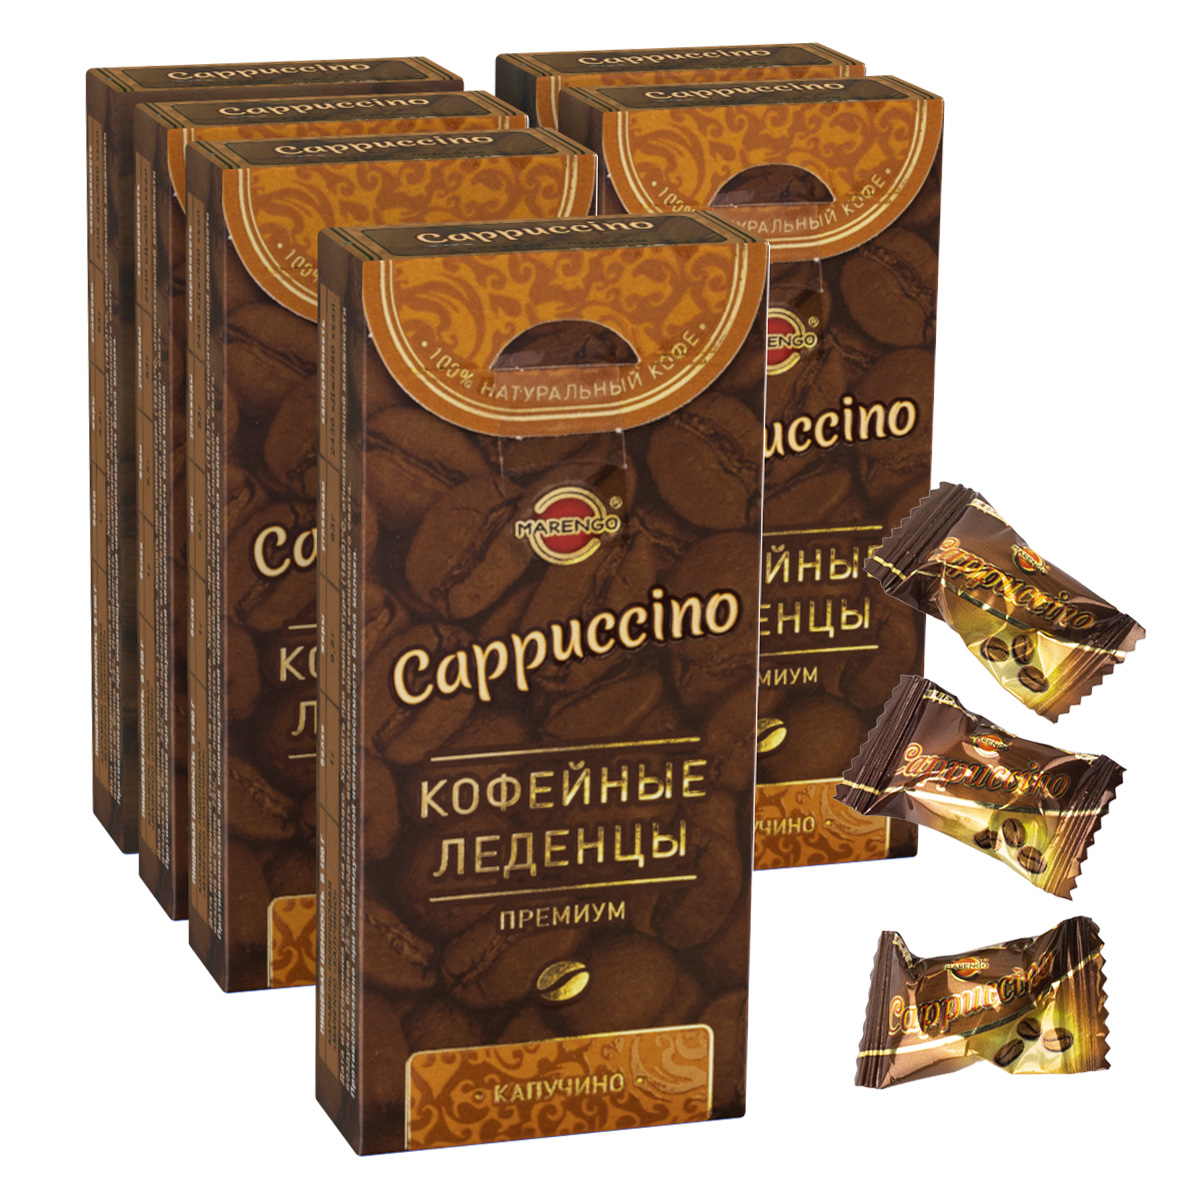 Карамель кофейная леденцовая Marengo Cappuccino, 35 г х 6 шт